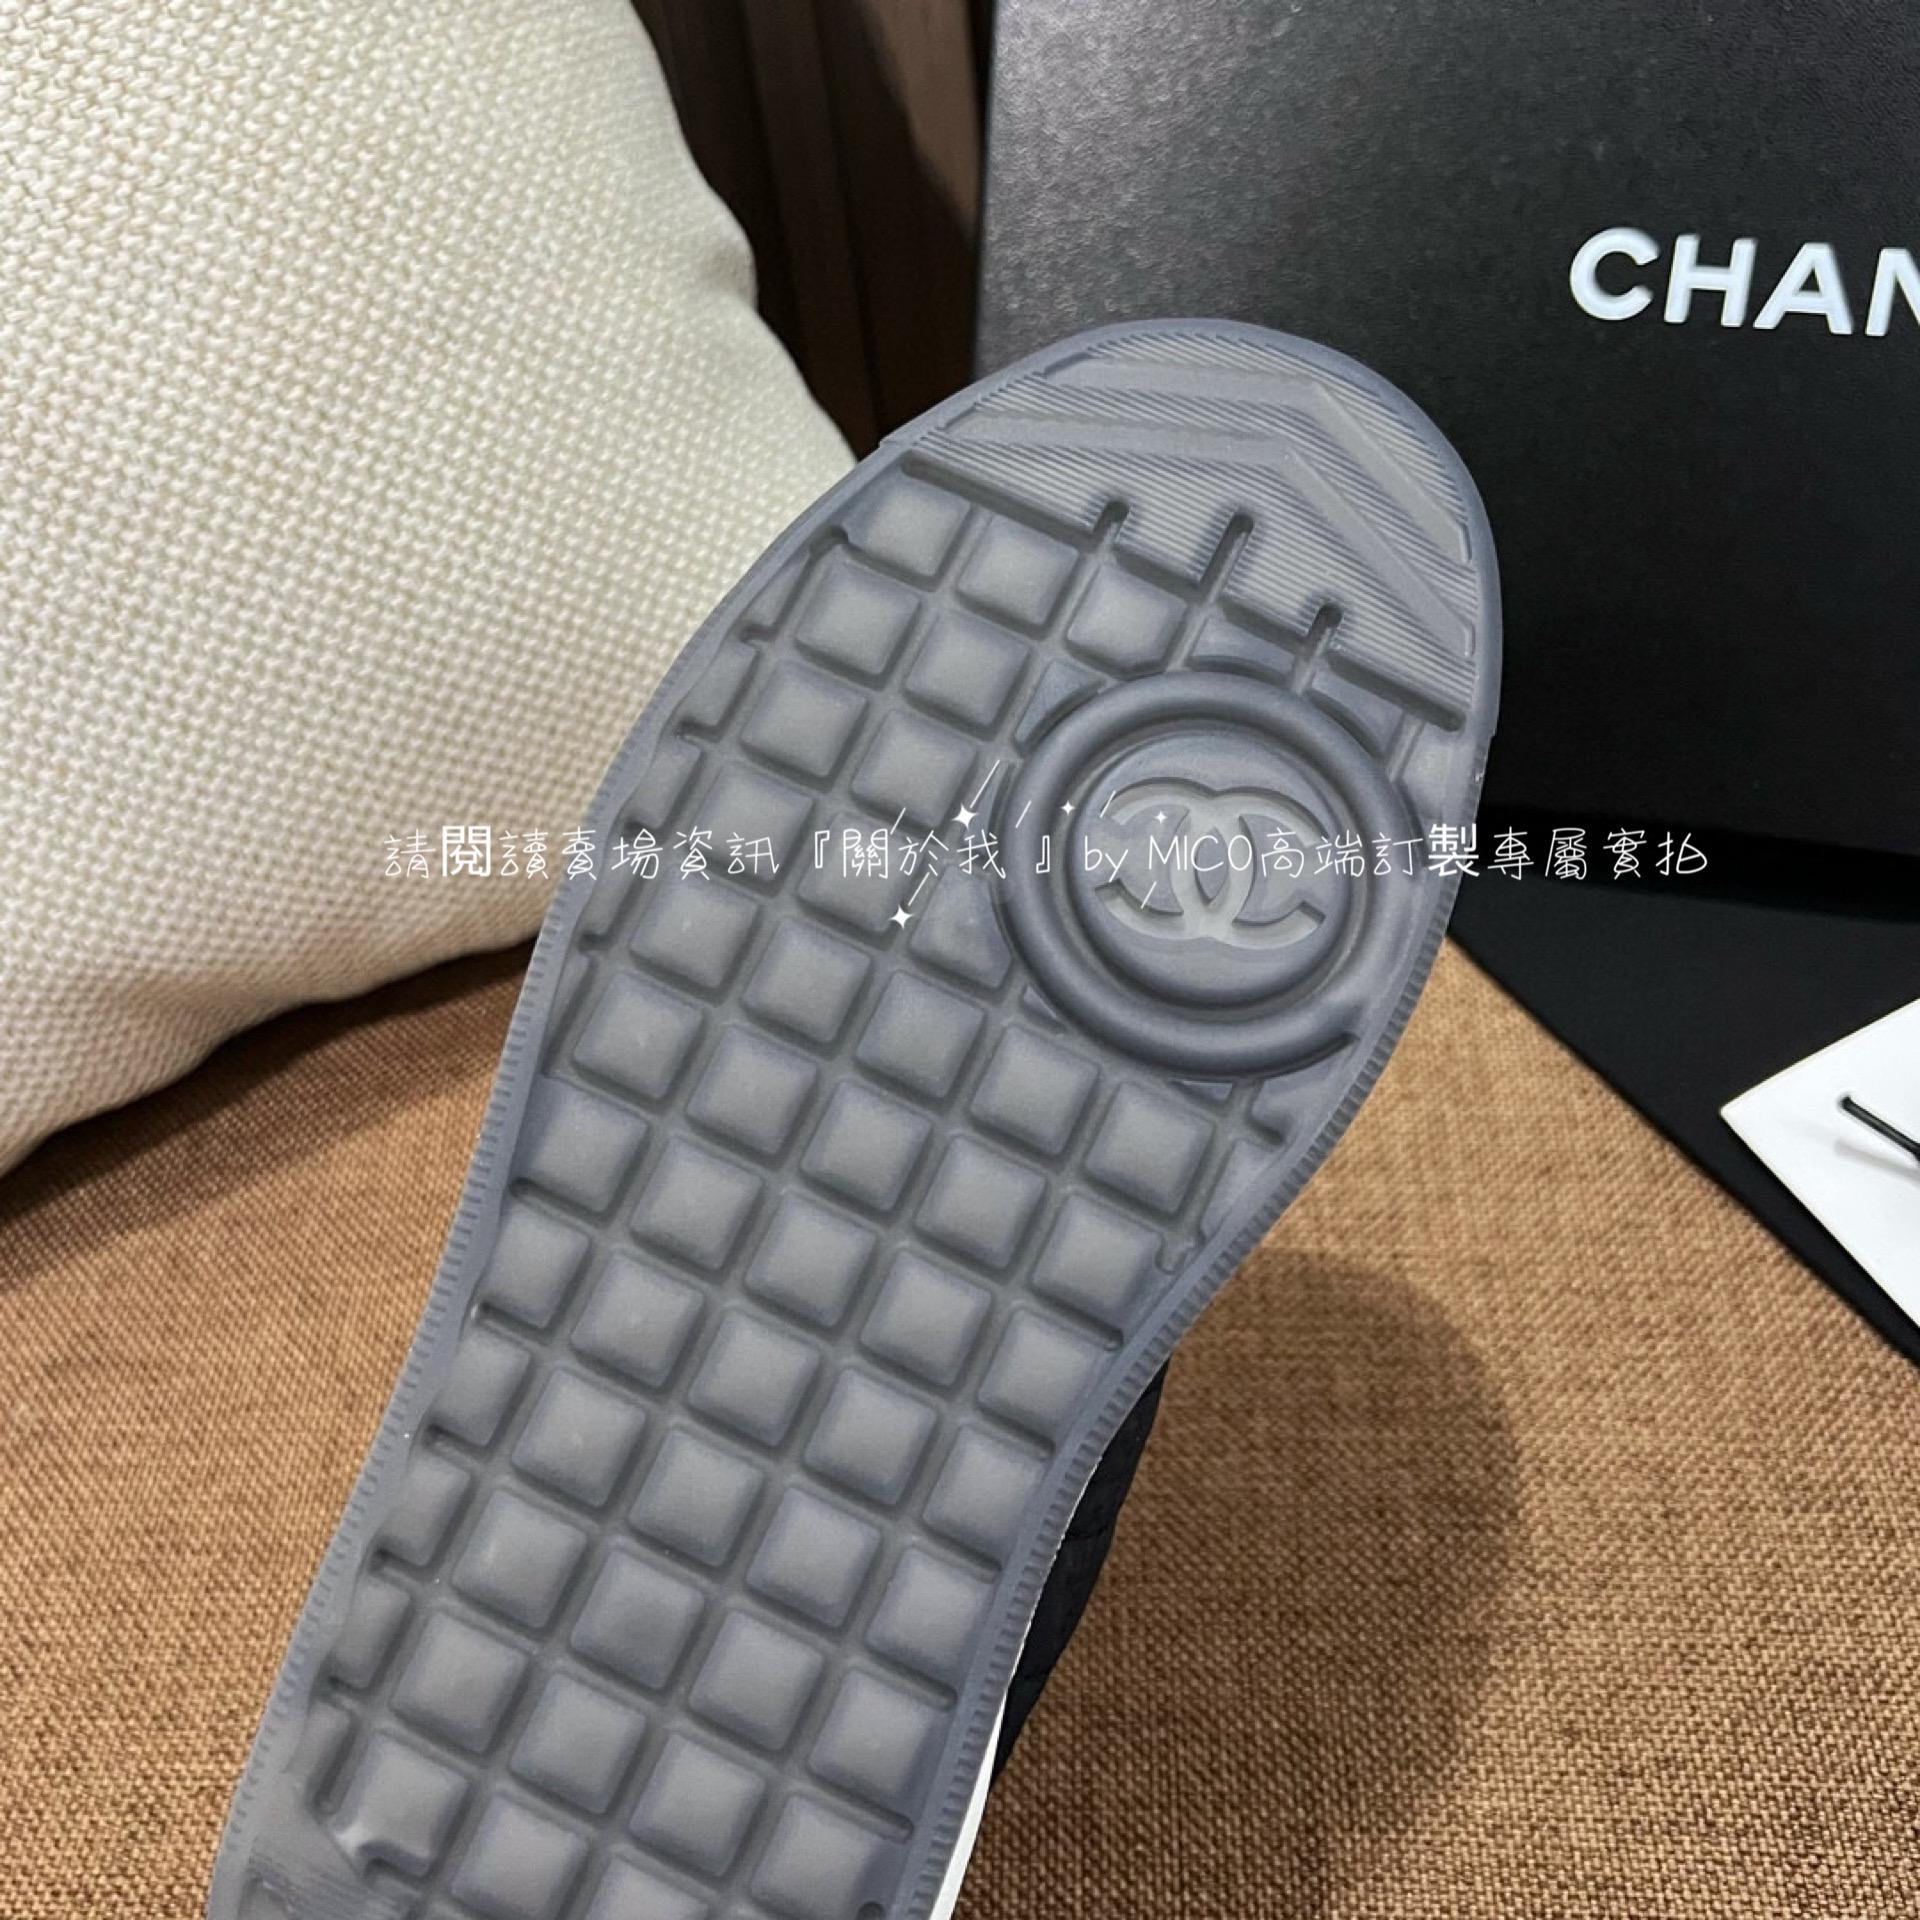 Chanel 23c 黑白配色 反毛皮拼接菱格布面 休閒板鞋 休閒鞋 35-39